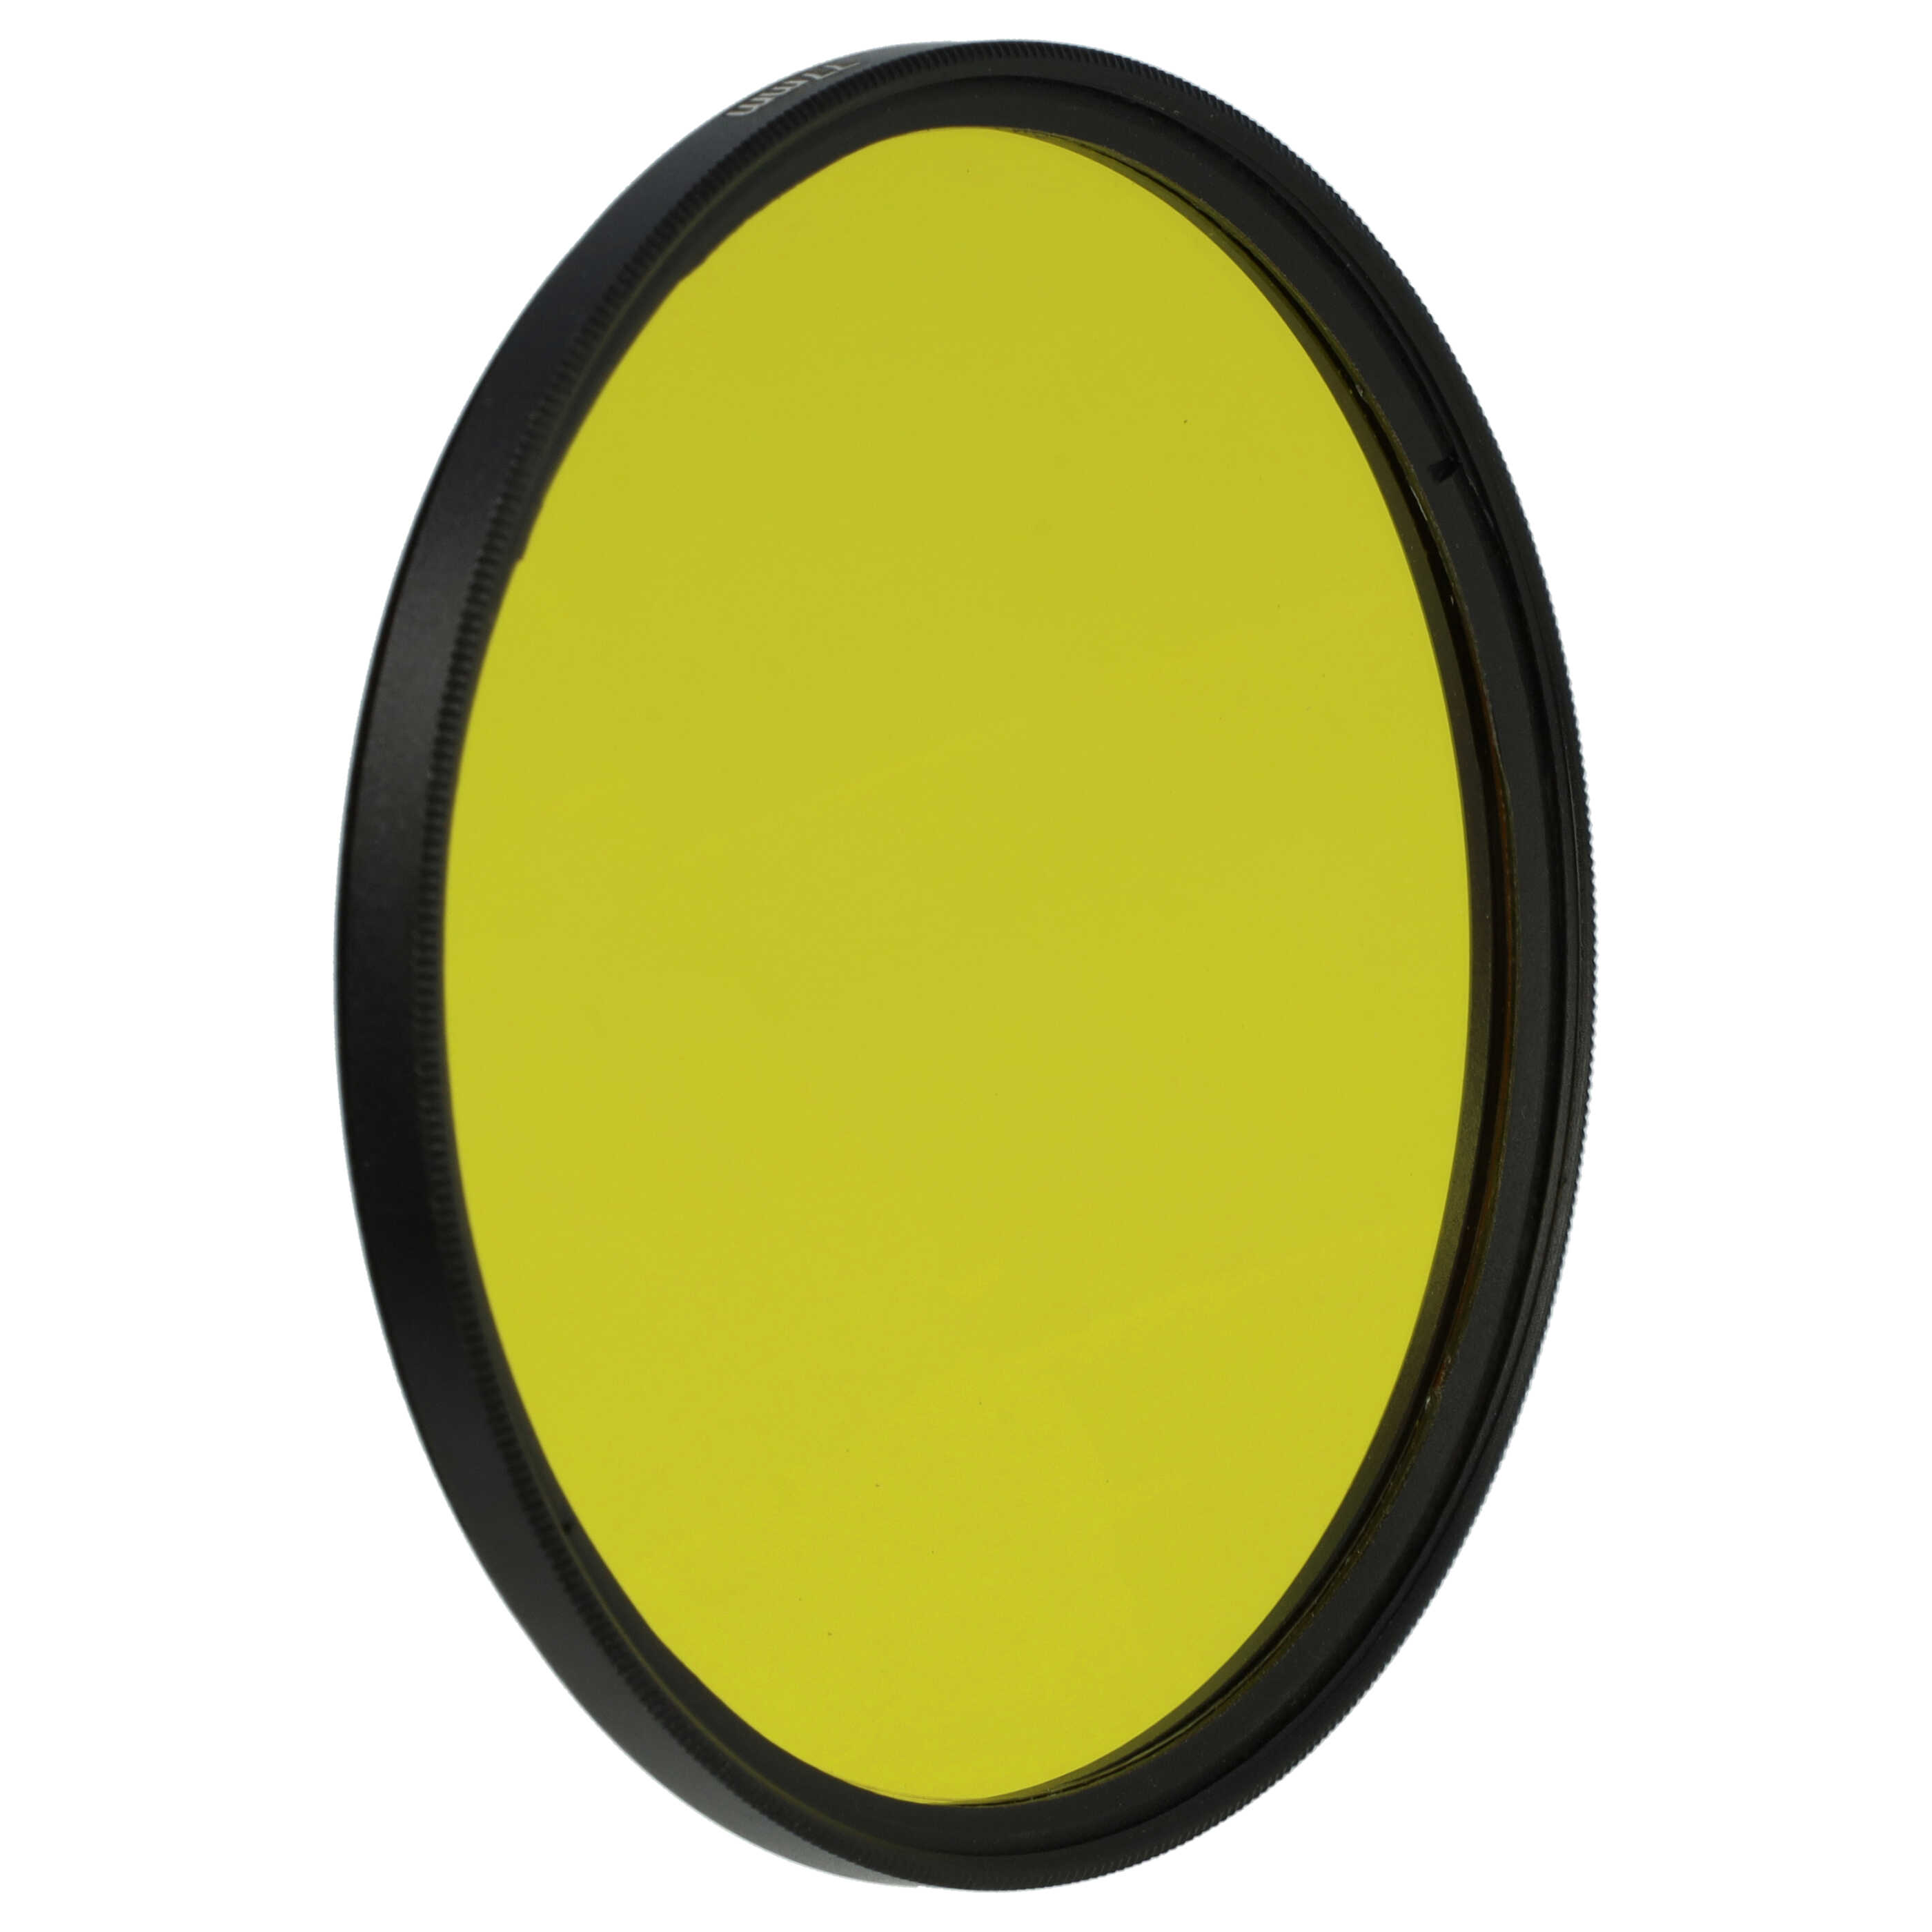 Filtre de couleur jaune pour objectifs d'appareils photo de 77 mm - Filtre jaune